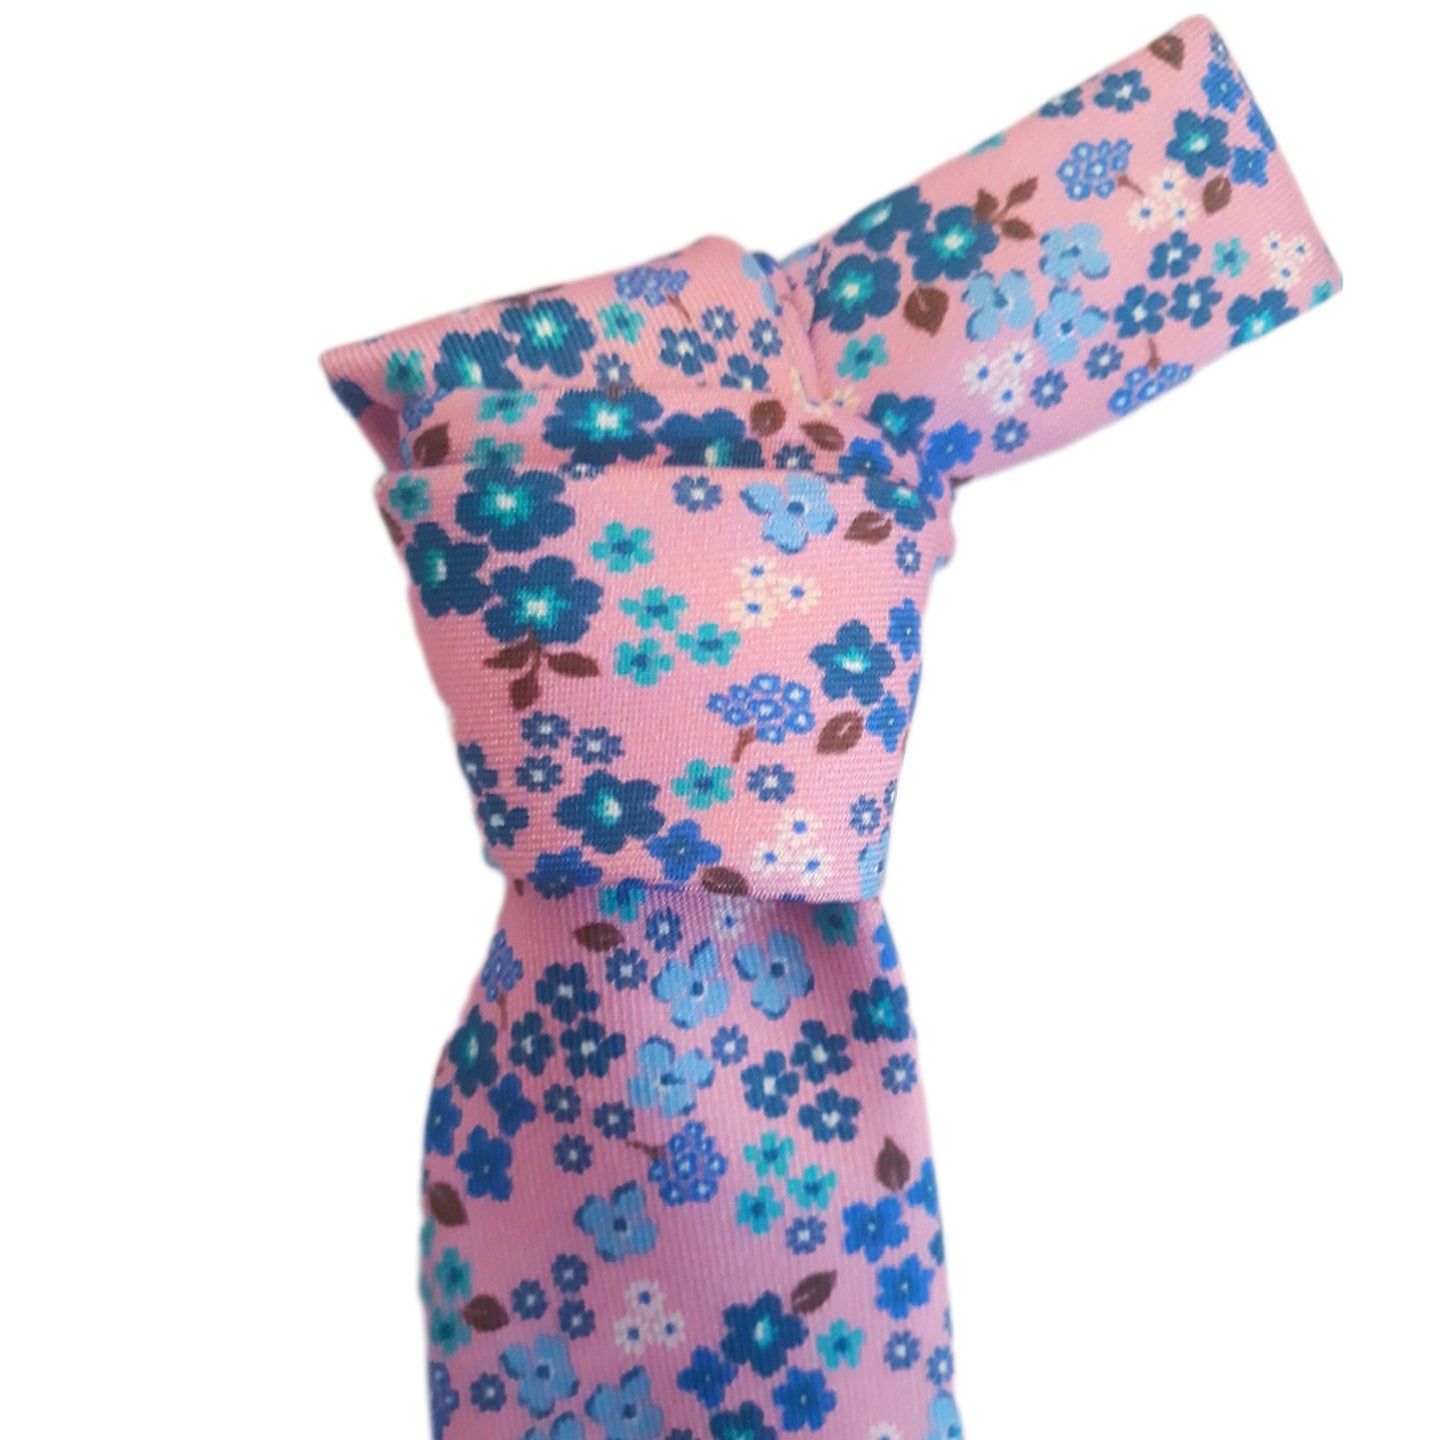 Cravatta rosa a fantasia con i fiori 3 pieghe di pura seta fatta a mano